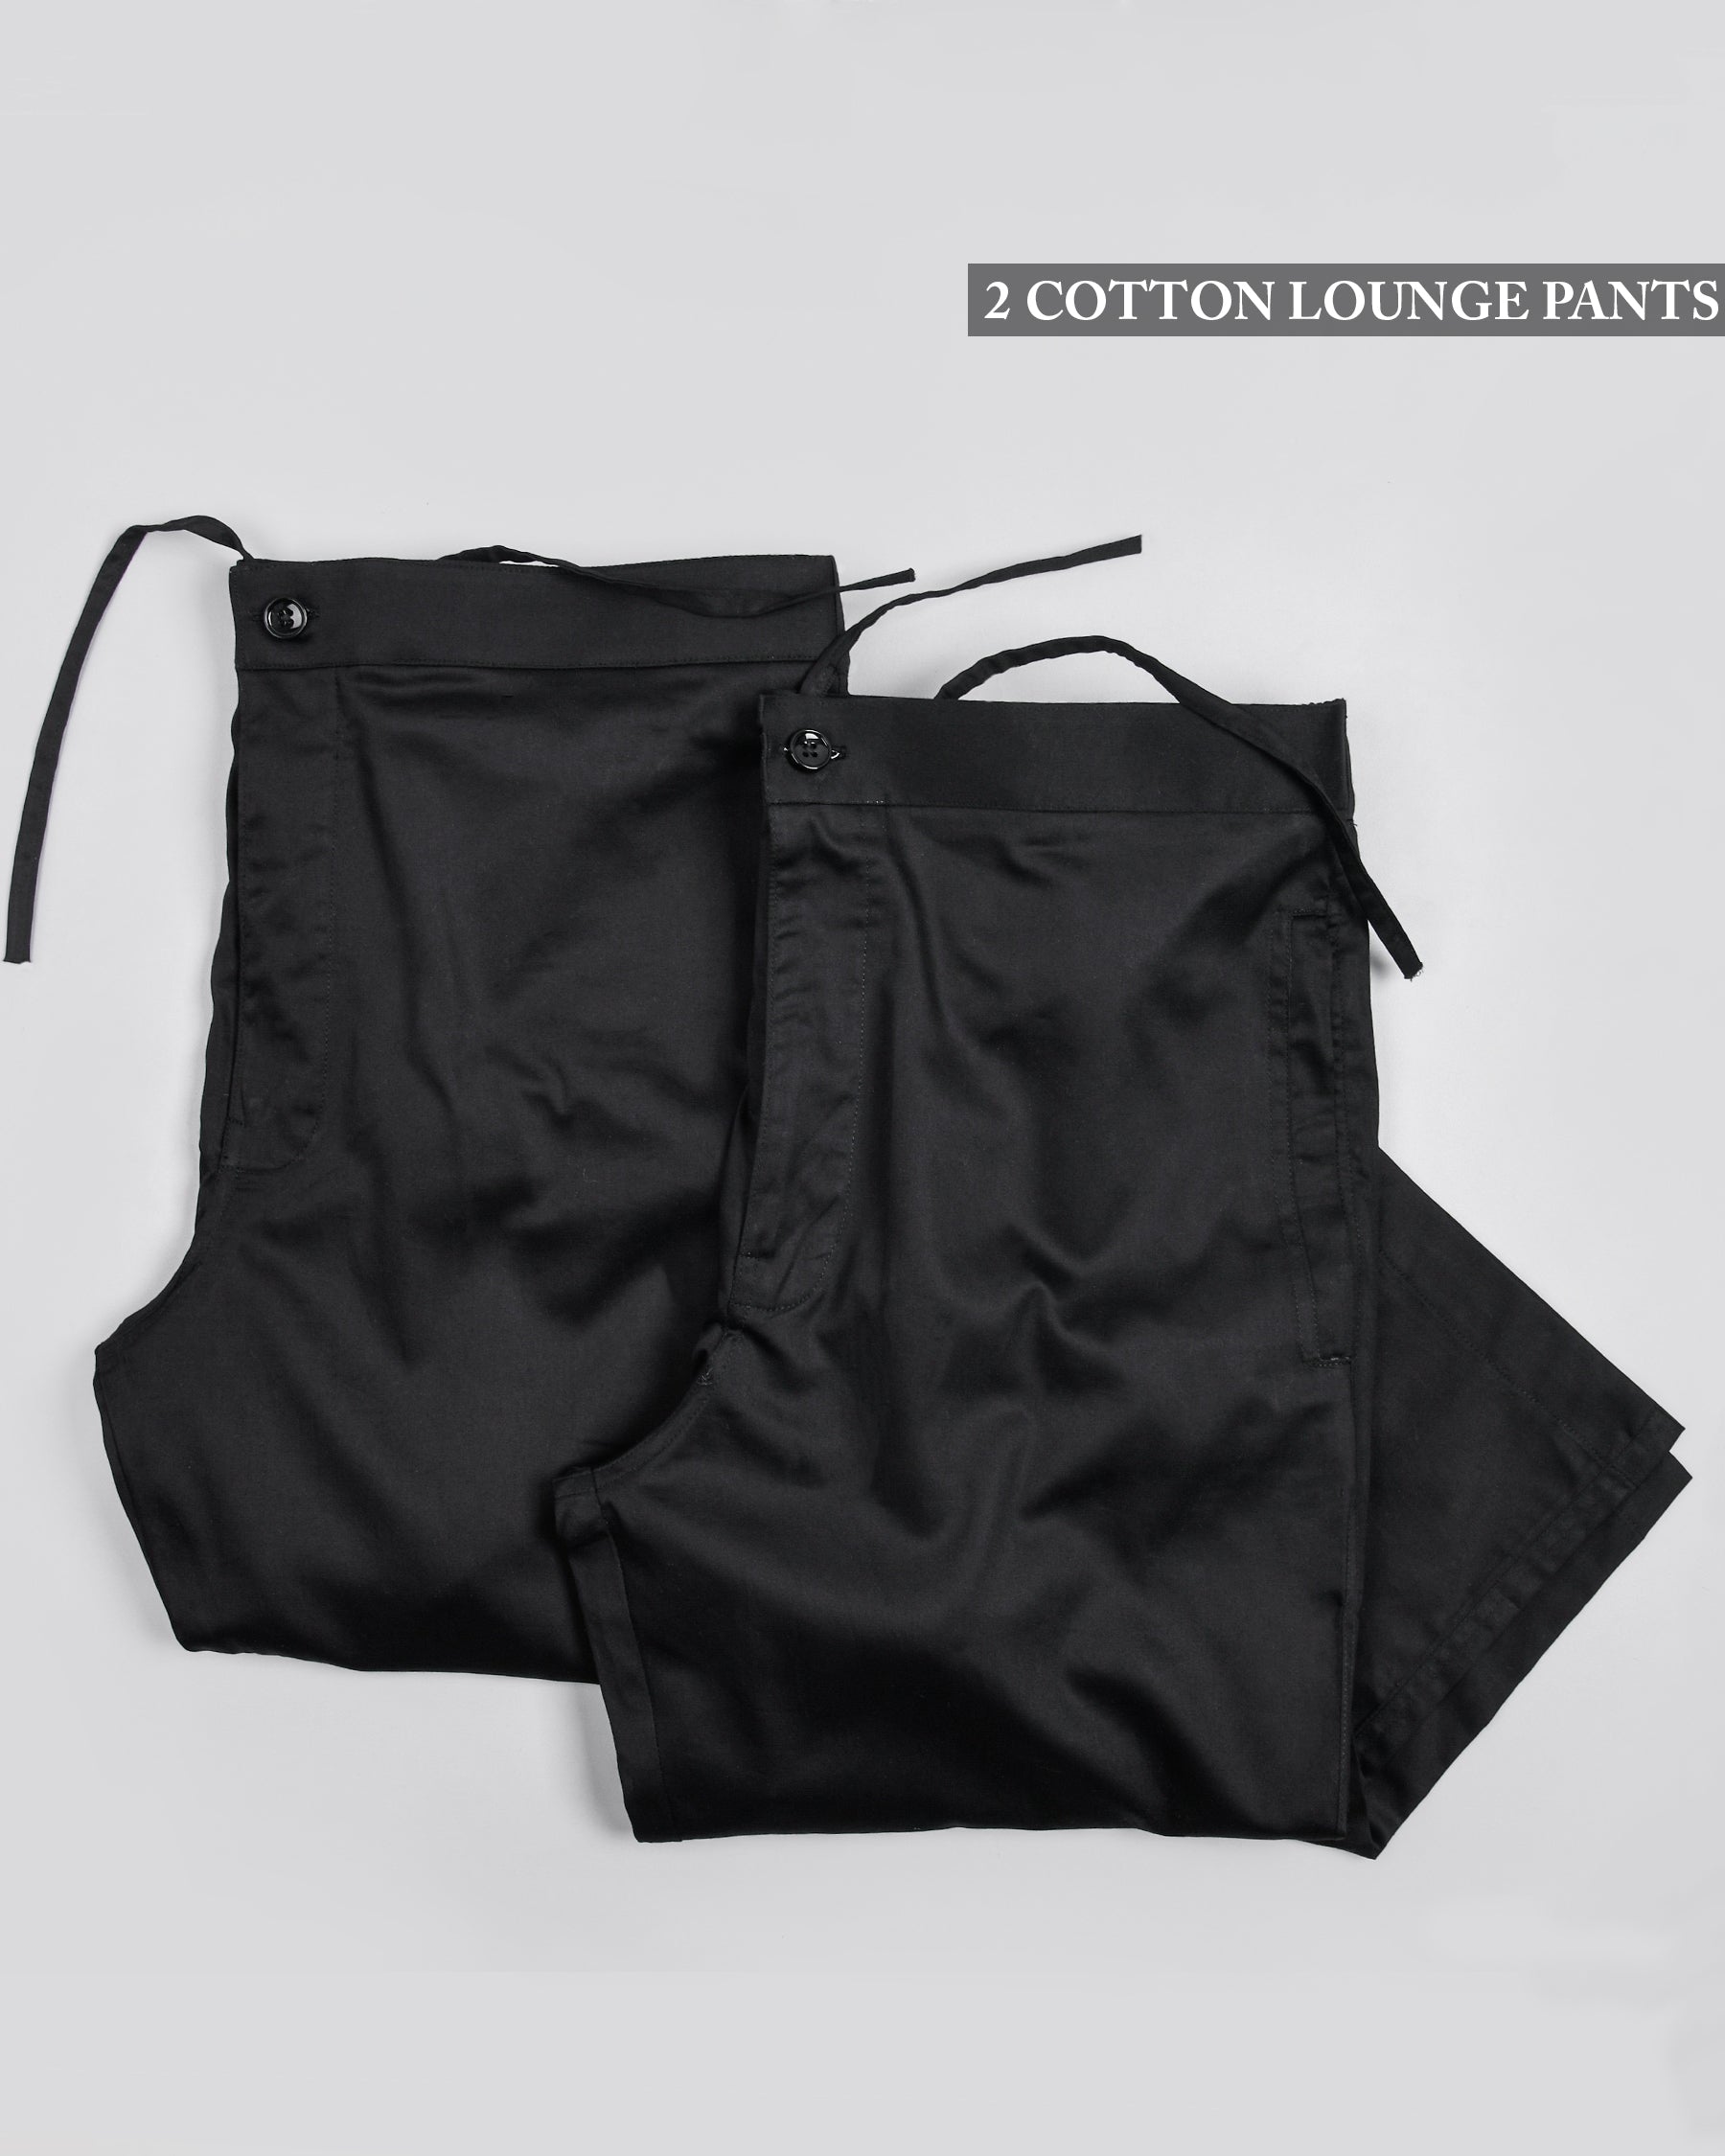 Two Black Premium Cotton Lounge Pants LP082-42, LP082-40, LP082-44, LP082-34, LP082-38, LP082-30, LP082-32, LP082-36, LP082-28